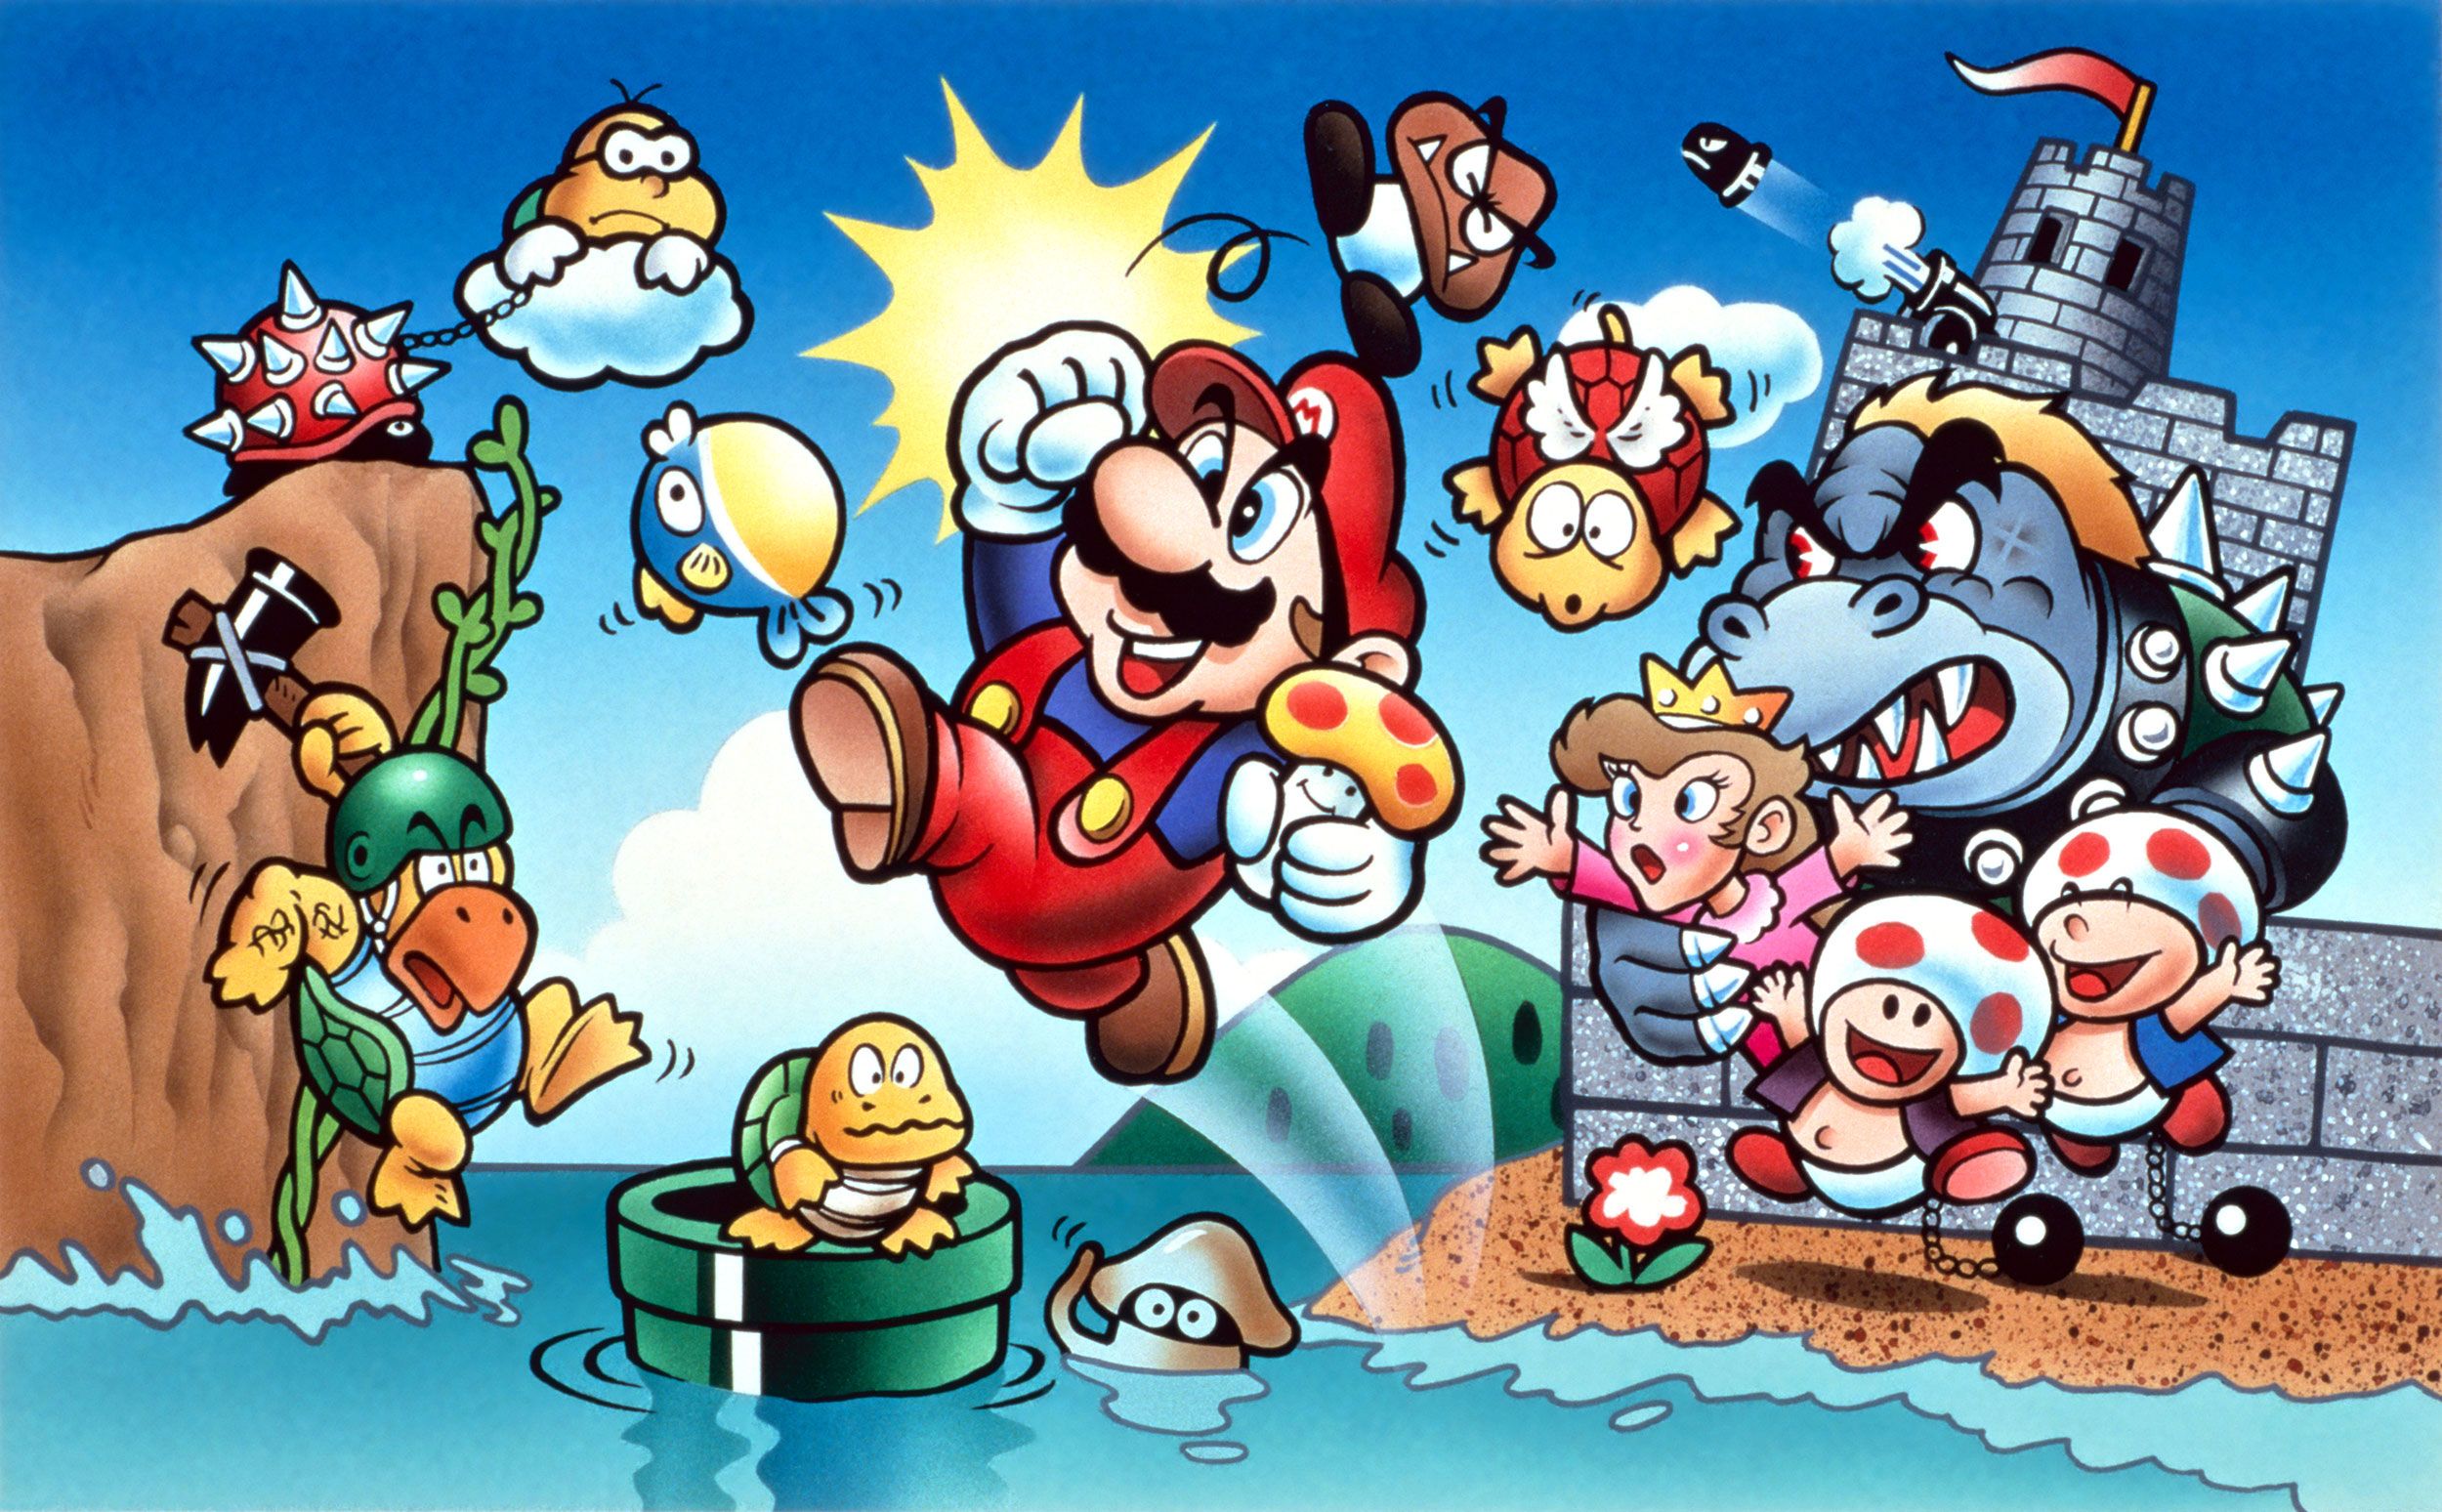 Shigeru Miyamoto Talks About Mario, Nintendo, and the Importance